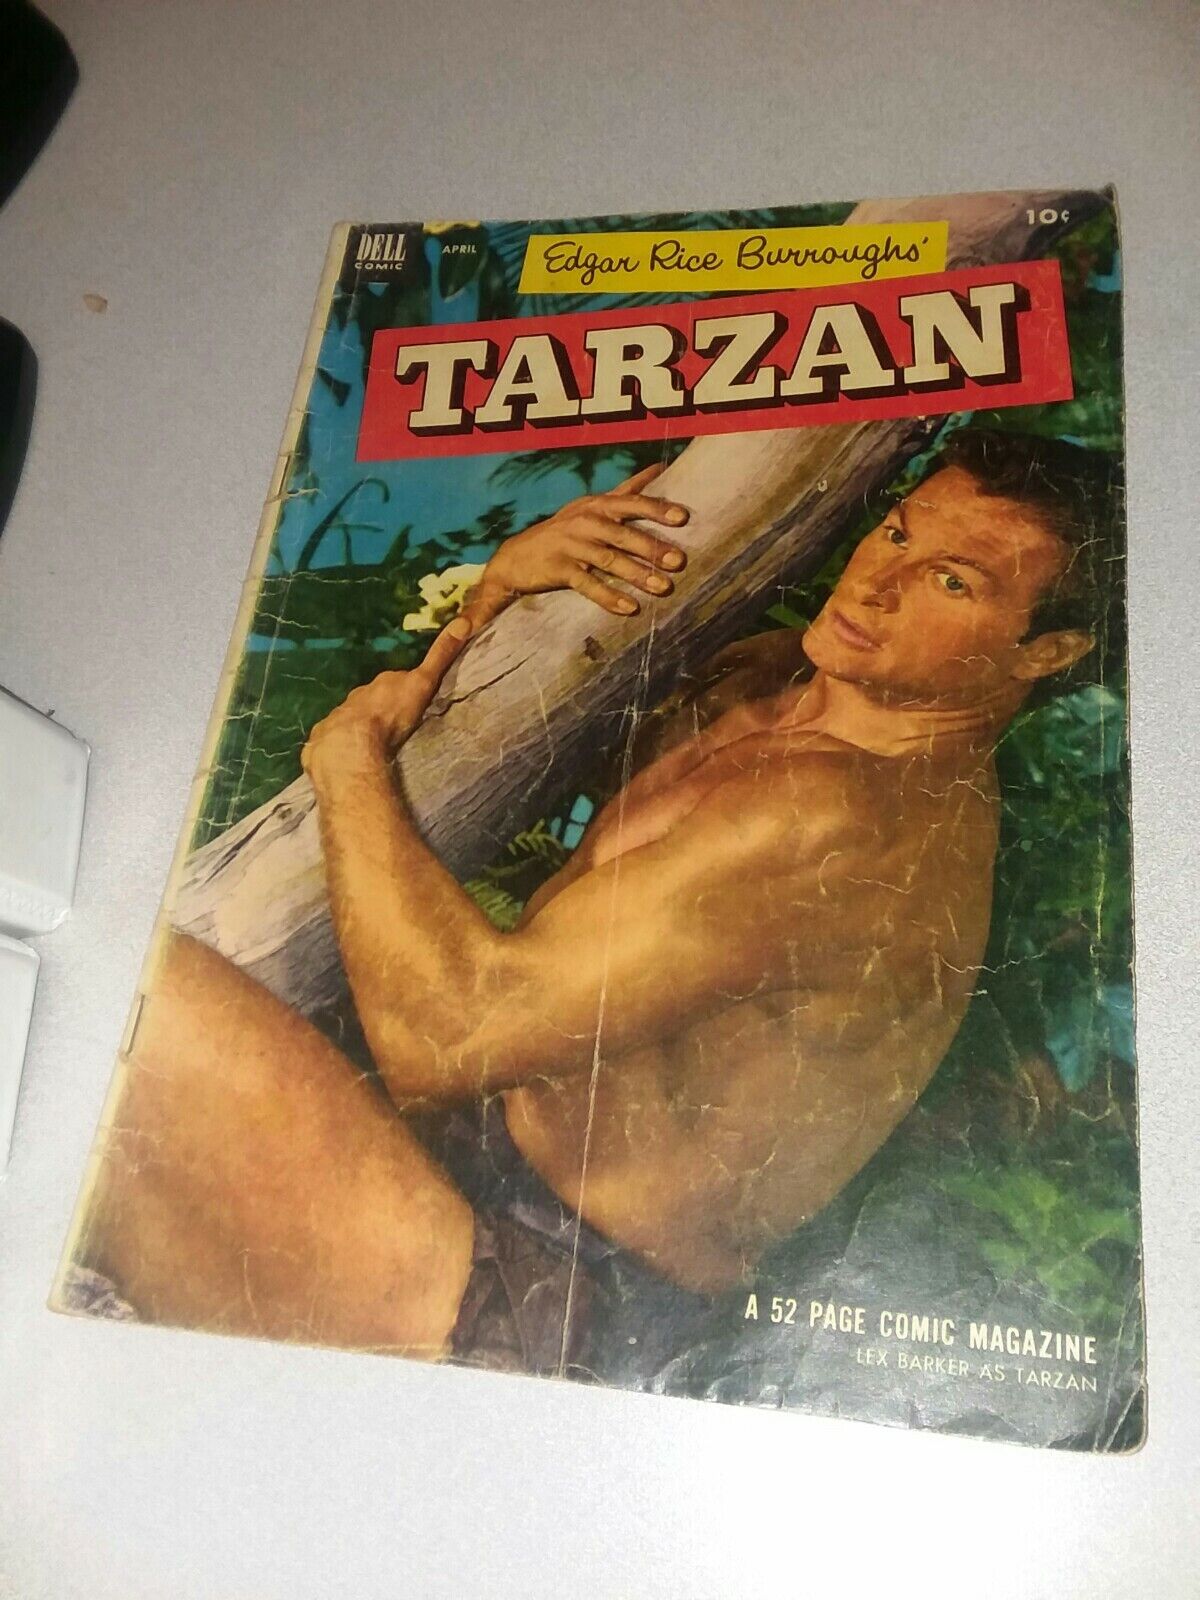 Tarzan #43 dell comics 1953 Lex Barker photo Cover golden age jungle movie book